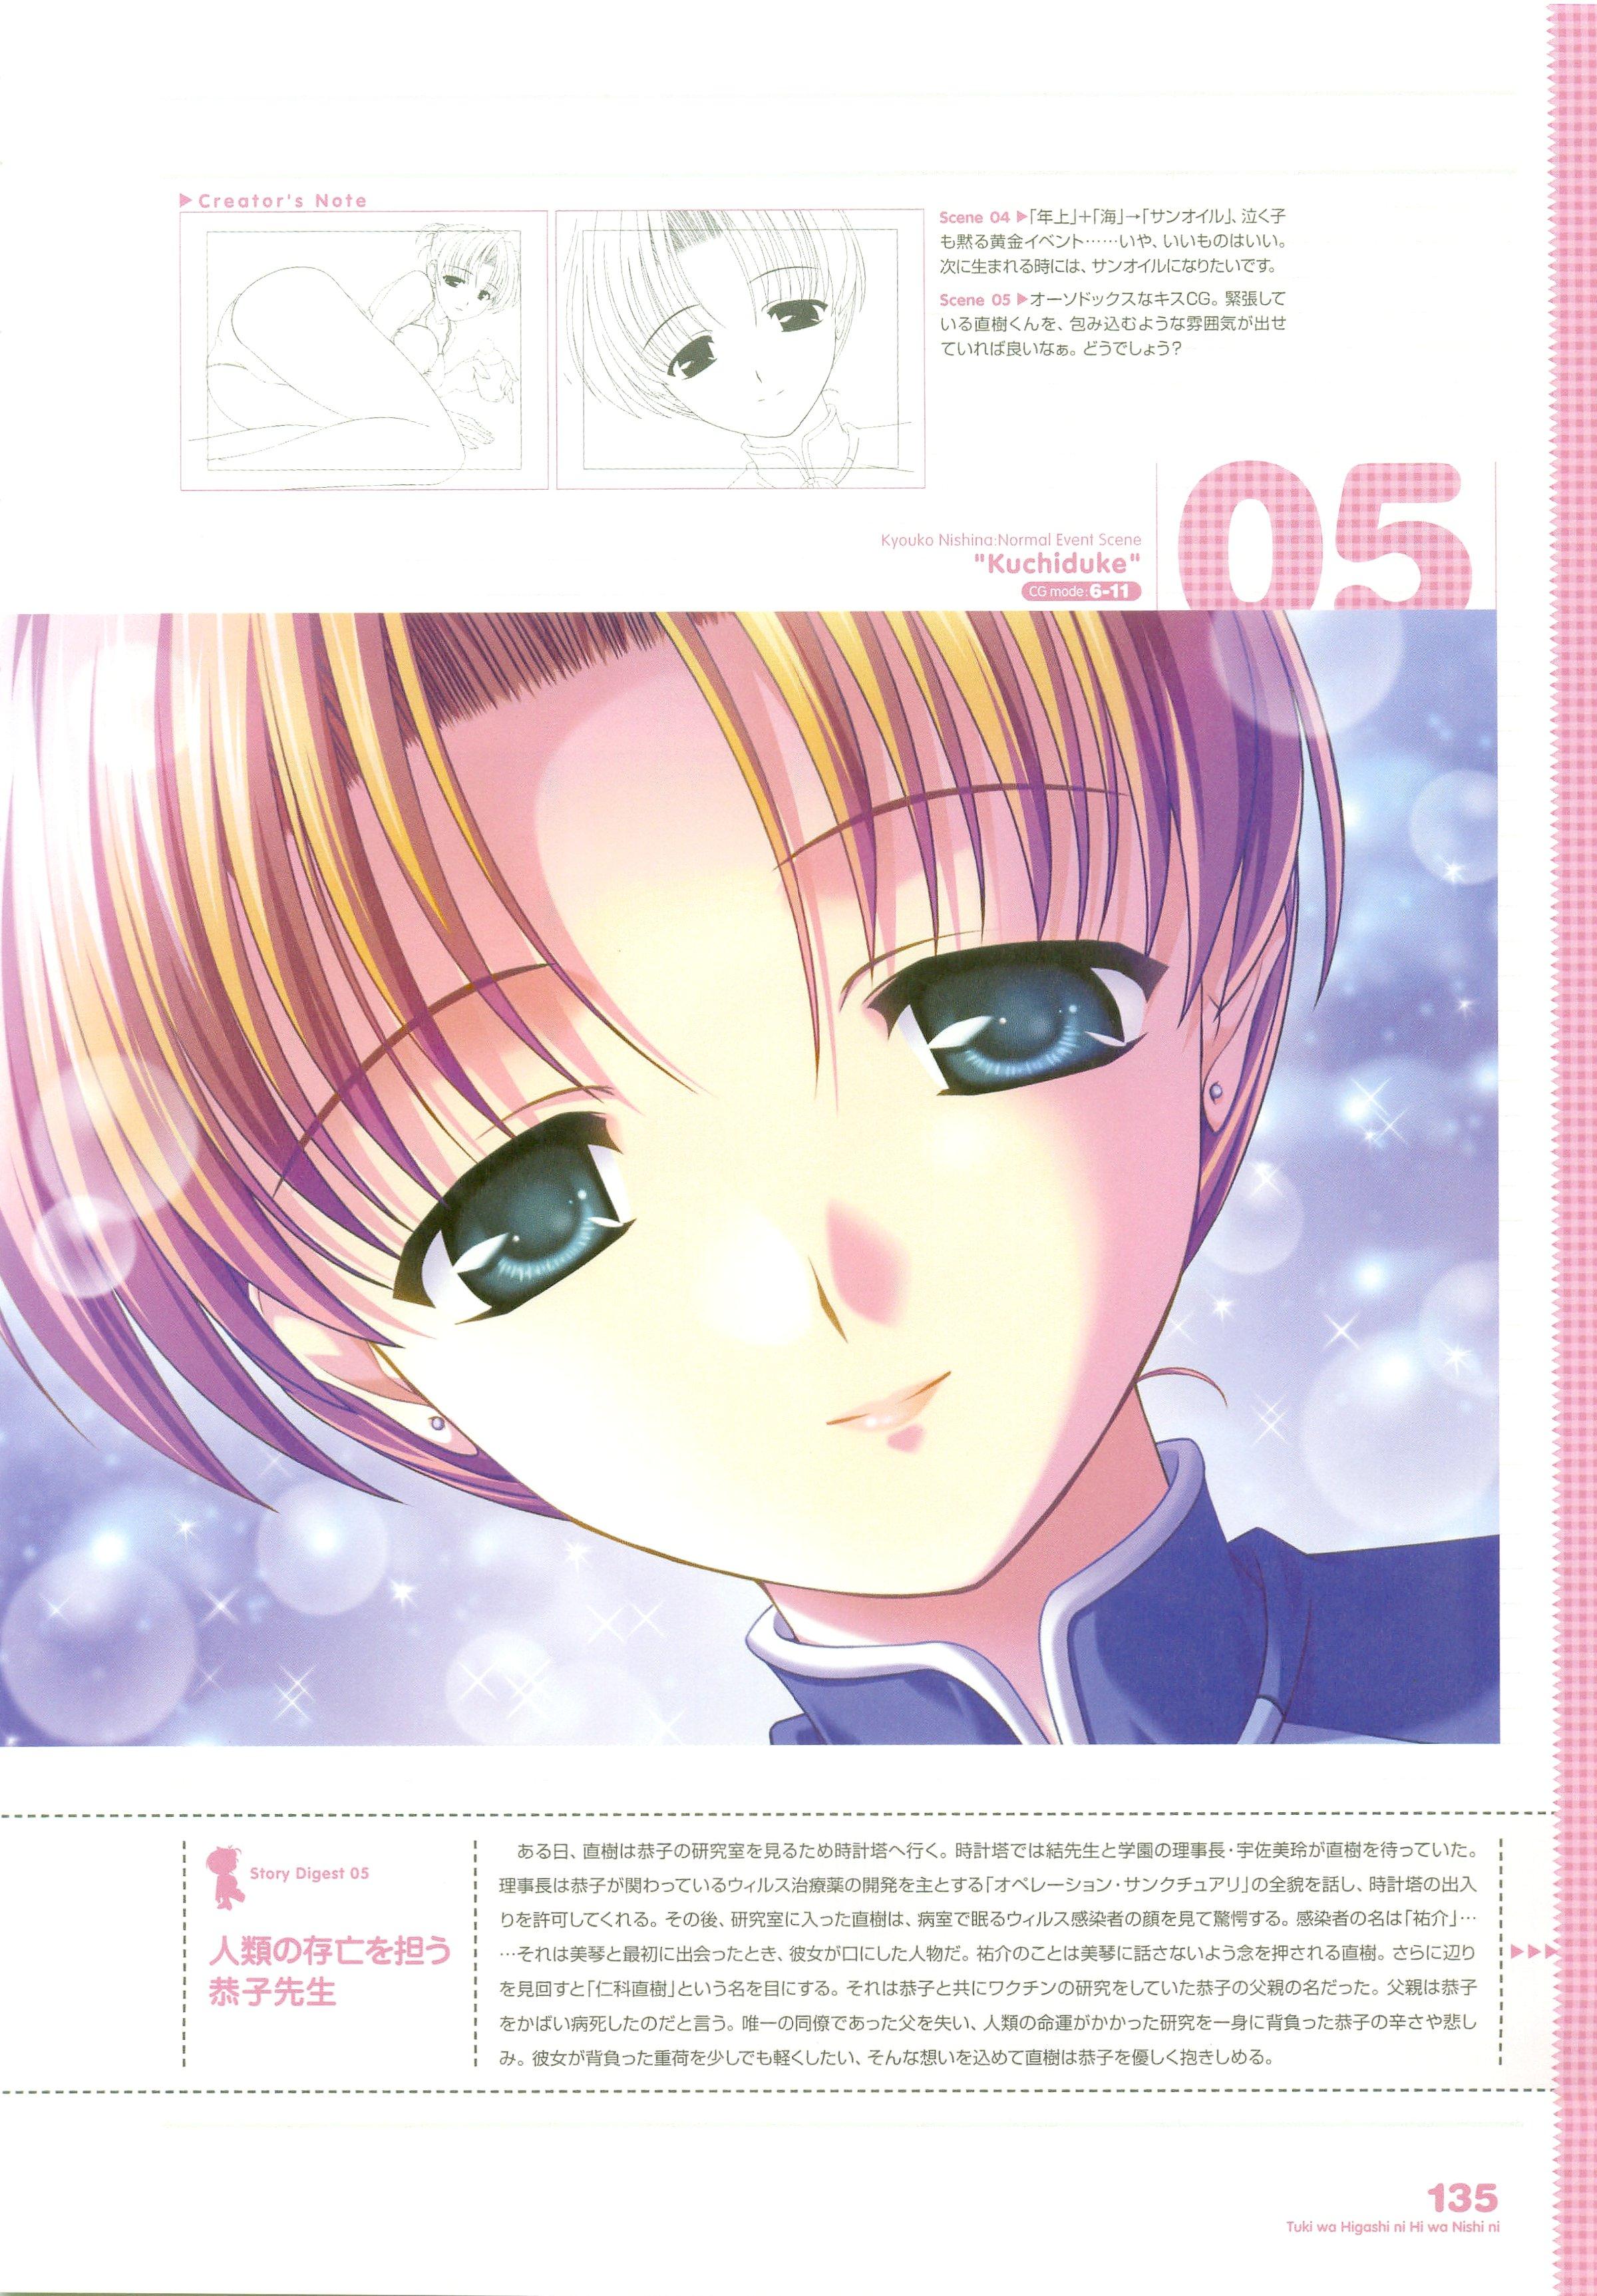 Tsuki wa Higashi ni Hi wa Nishi ni ～ Operation Sanctuary ～ Visual Fan Book 167